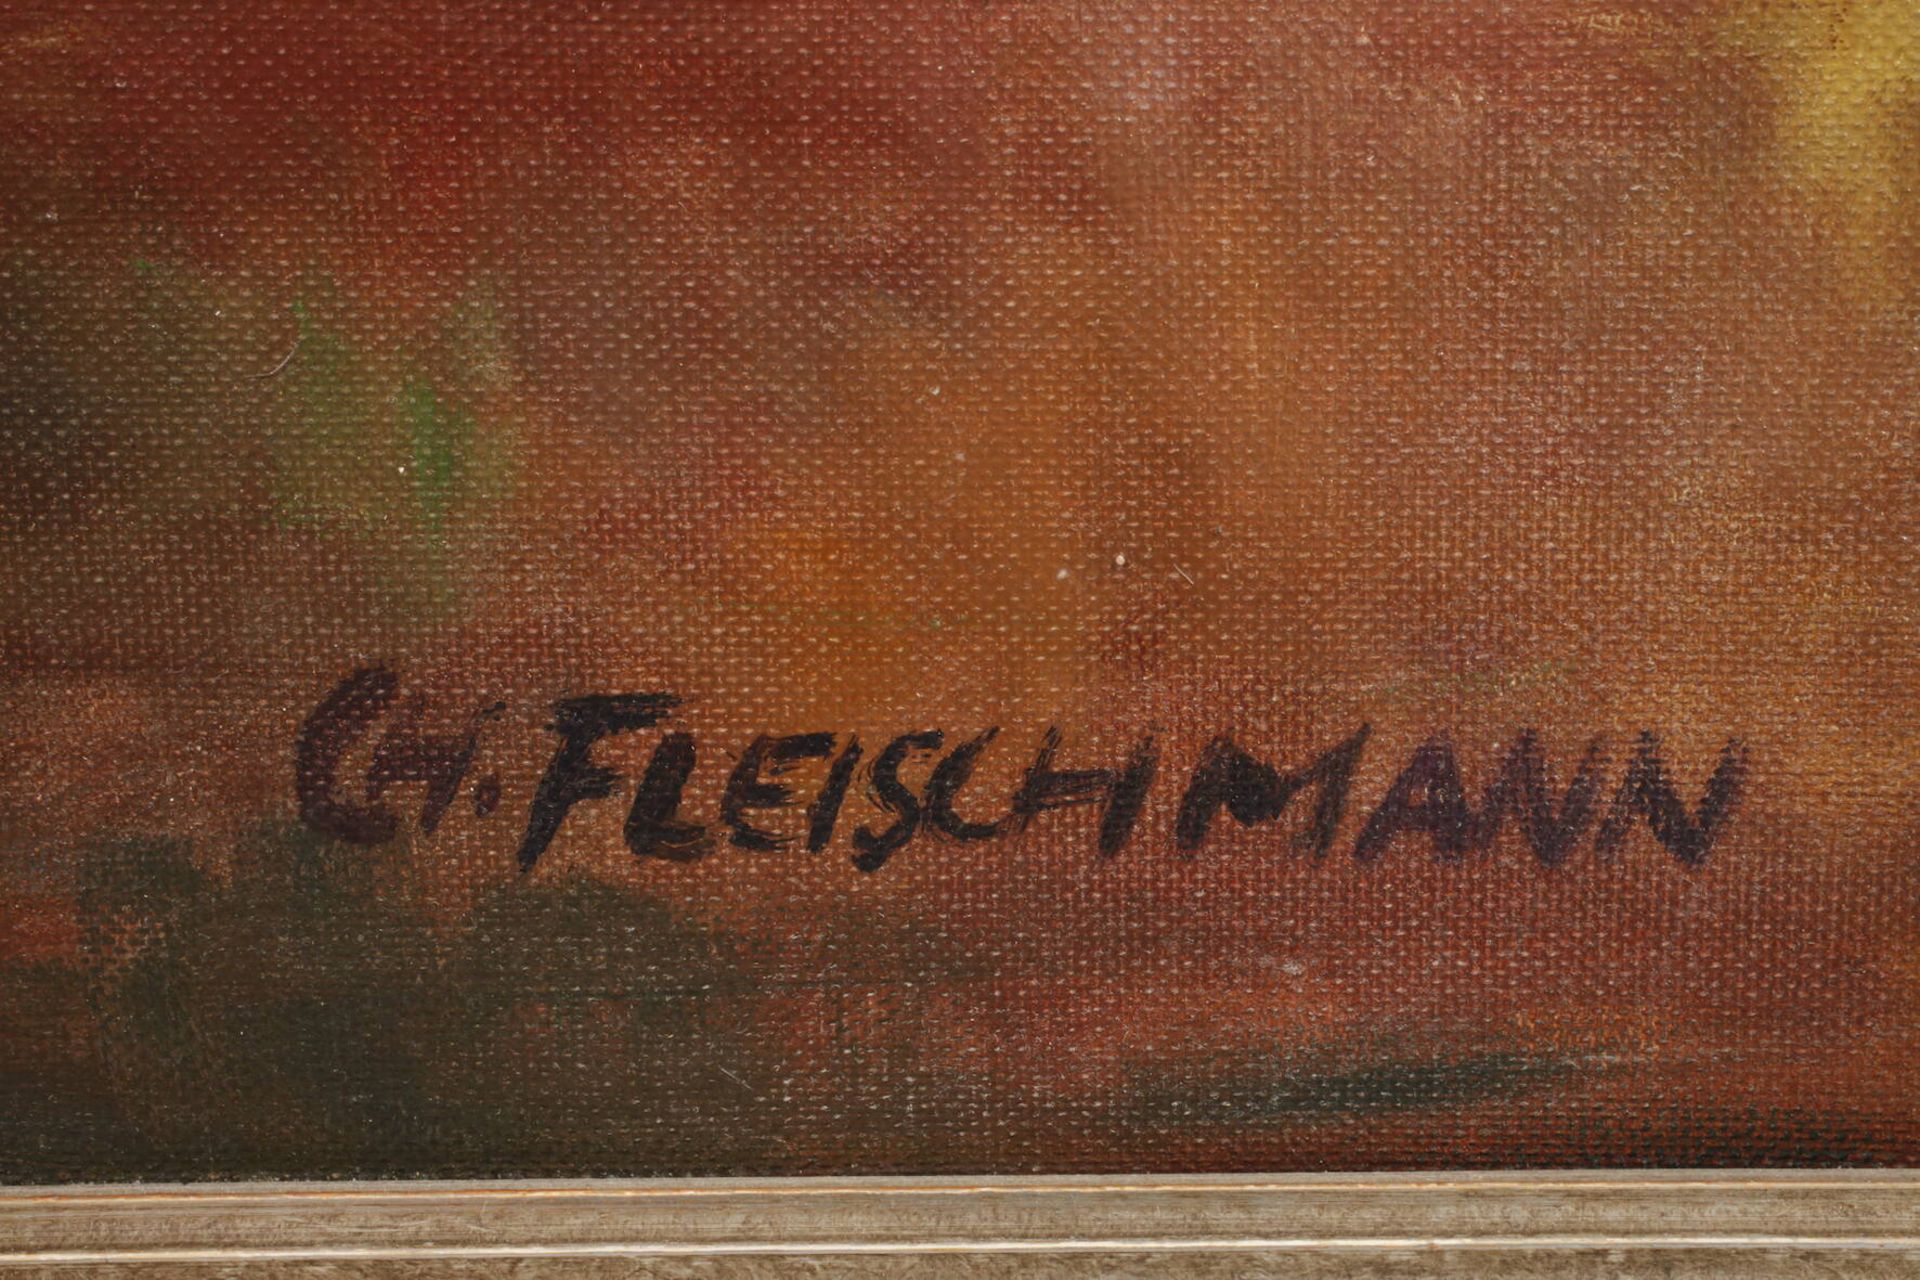 Fleischmann Blumenstillleben - Image 3 of 6